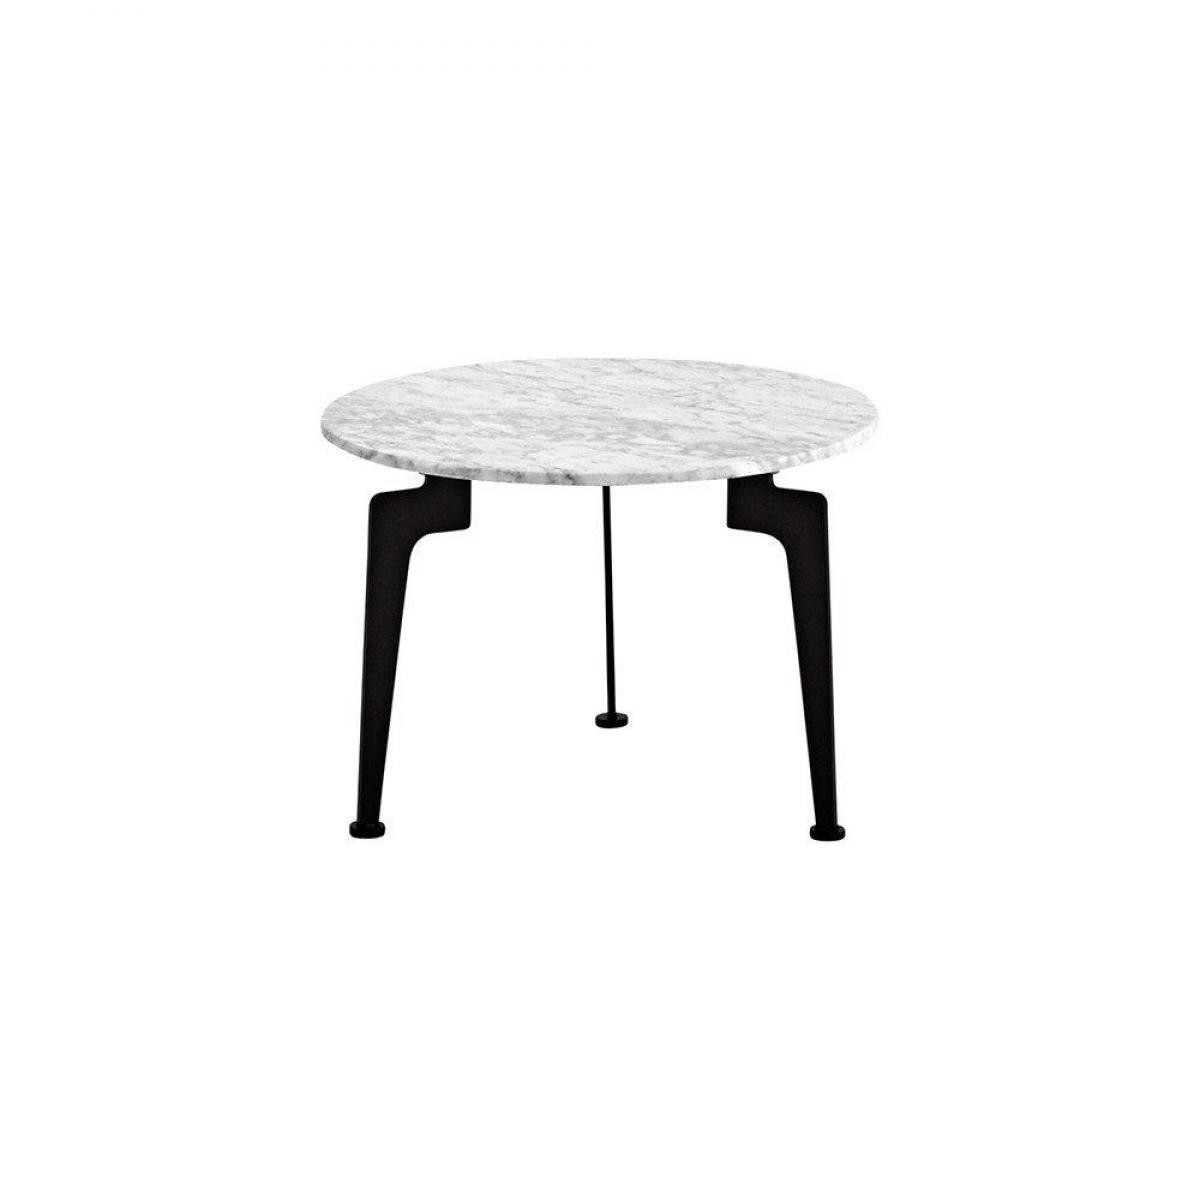 Inside 75 - INNOVATION LIVING Table basse design scandinave LASER taille M plateau en marbre - Tables à manger